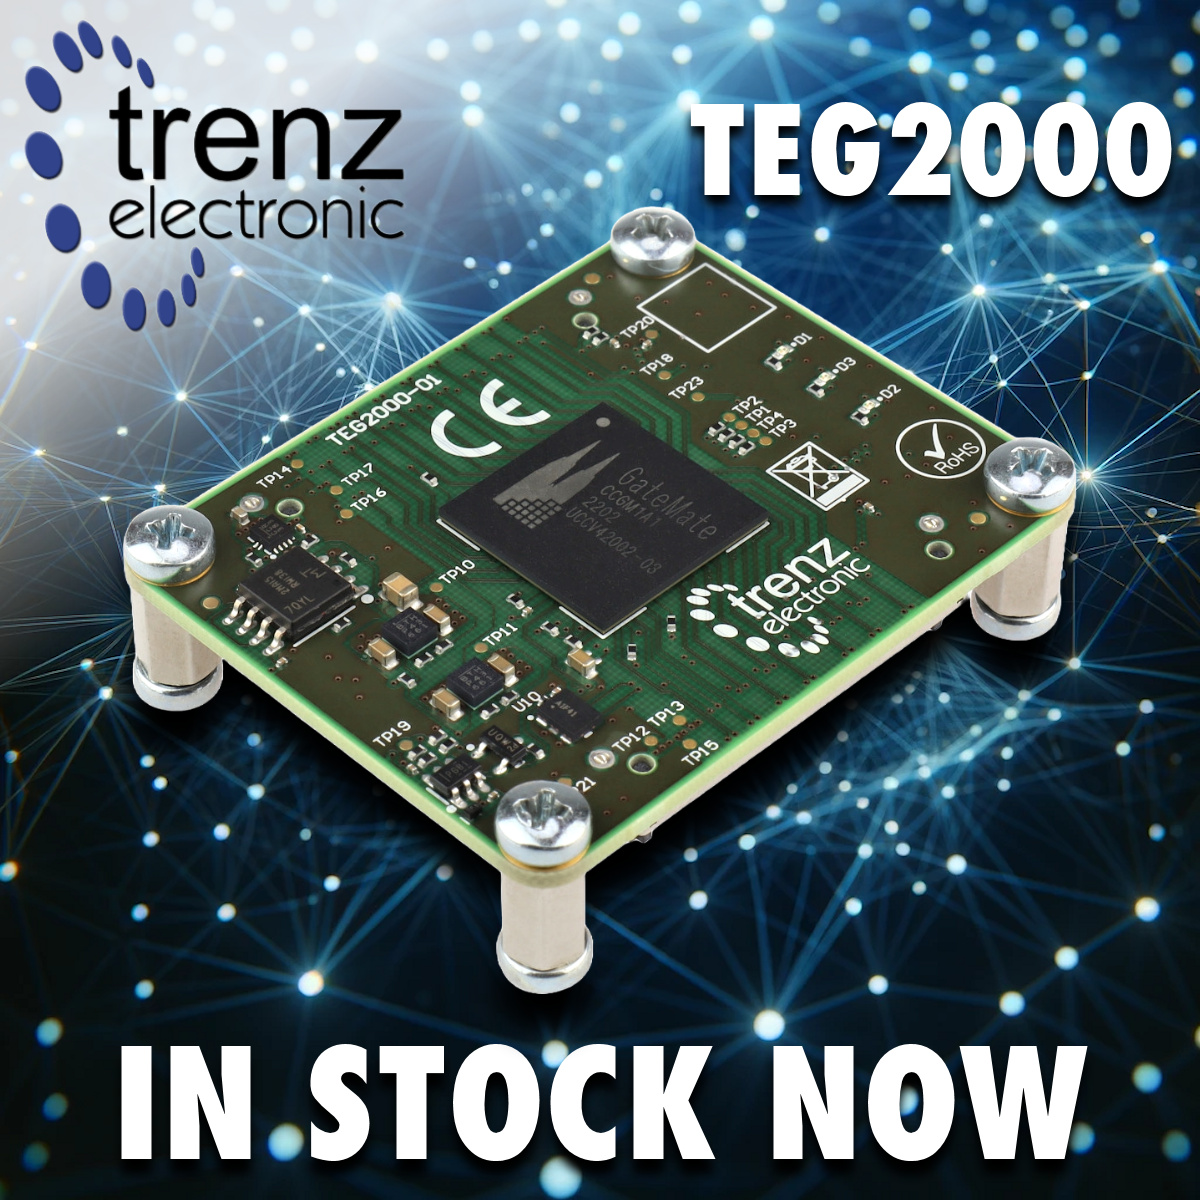 NEW from Trenz Electronic: TEG2000 FPGA module

sundance.com/teg2000/

#TrenzElectronic #FPGA #FPGAs #Embedded #FPGAdesign #MPSoC #EmbeddedSystems #EmbeddedSolutions #embeddedcomputing #TrenzElectronic #PCIe #CologneChip #SoC #SoM #GateMate #GateMateA1 #Electronics #OpenSource